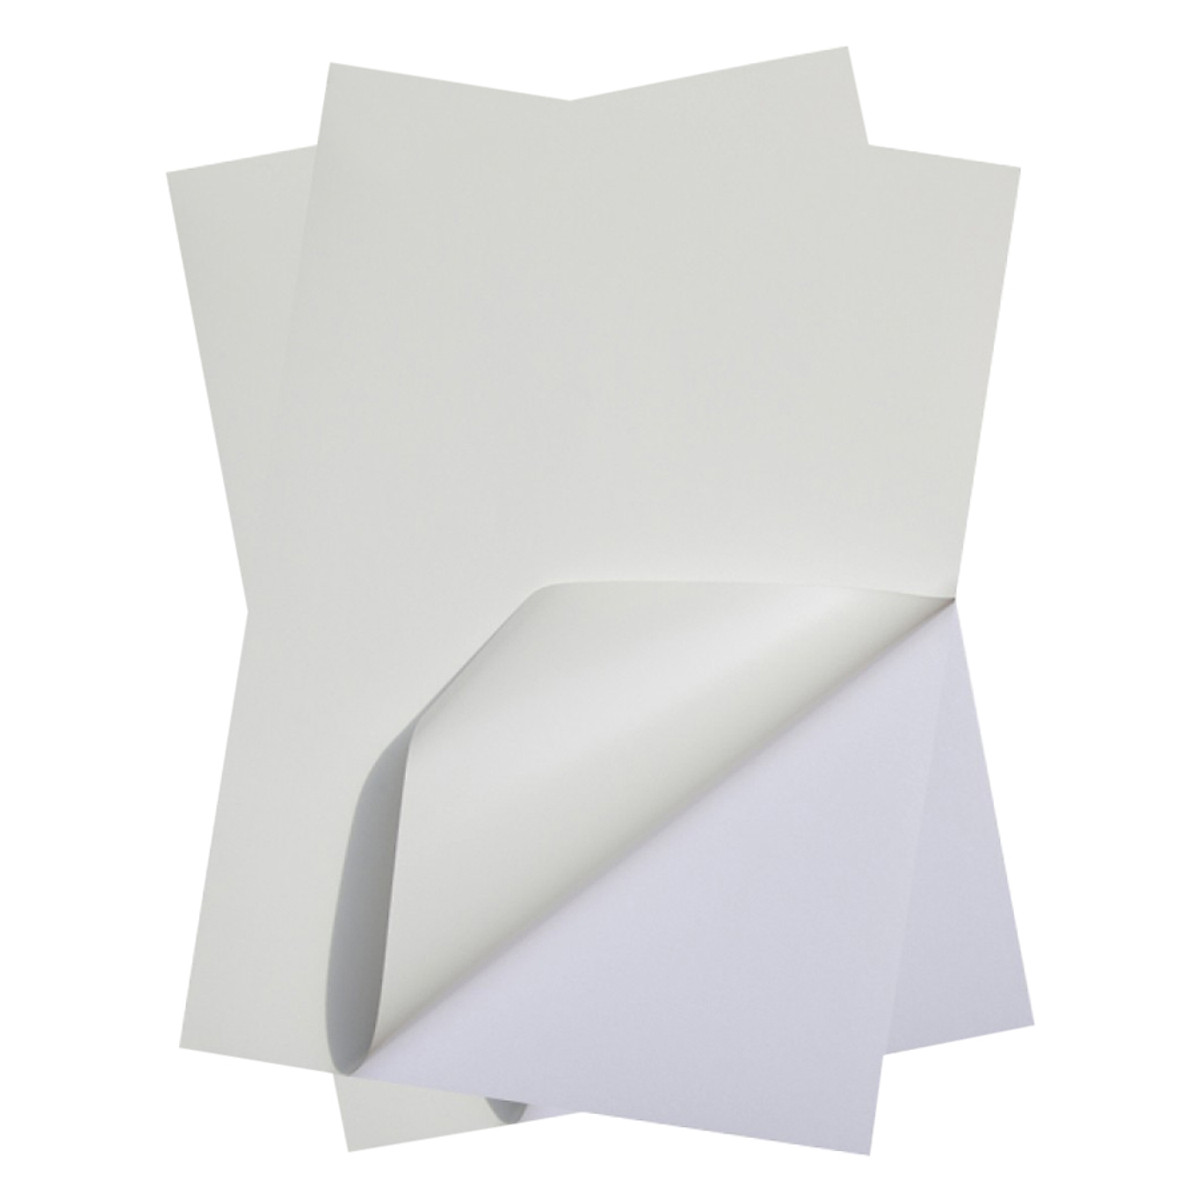 Một số đặc điểm cơ bản của các loại giấy hiện nay